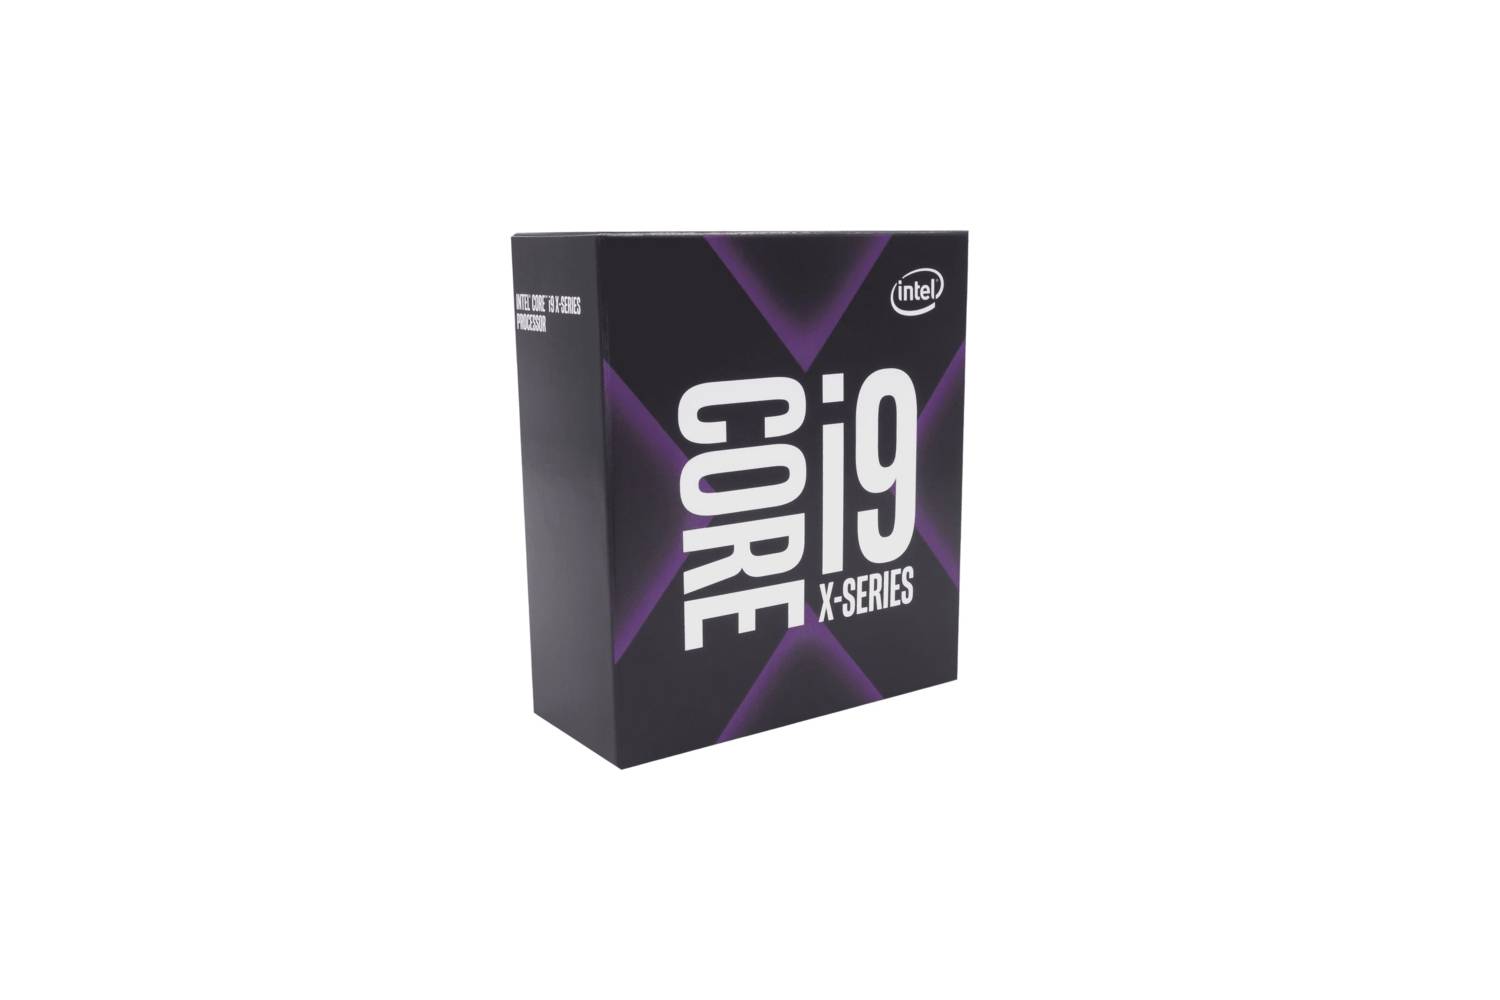 Intel Core i9-10900X X-series 19.25M Cache, 3.70 GHz Processor